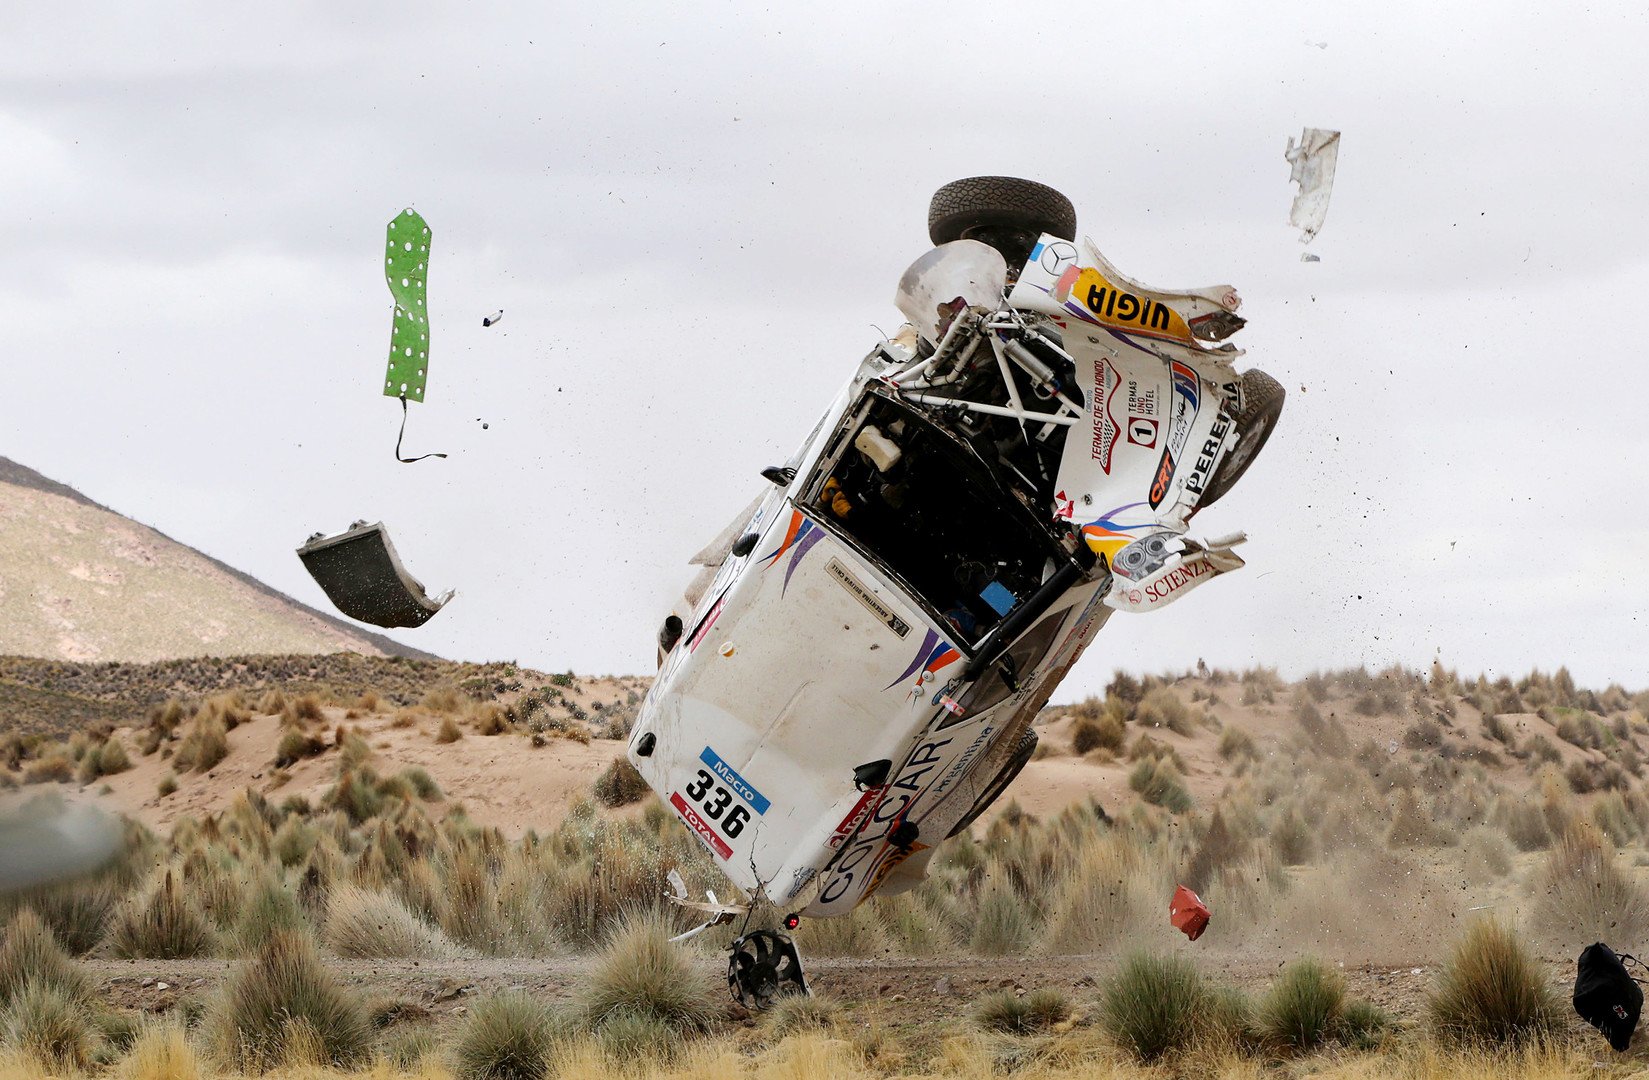  تحطم سيارة الأرجنتينييْن مانويل سيلفا وبابلو سيسترنا "مرسيدس" خلال المرحلة الـ 7 من سباق رالي داكار